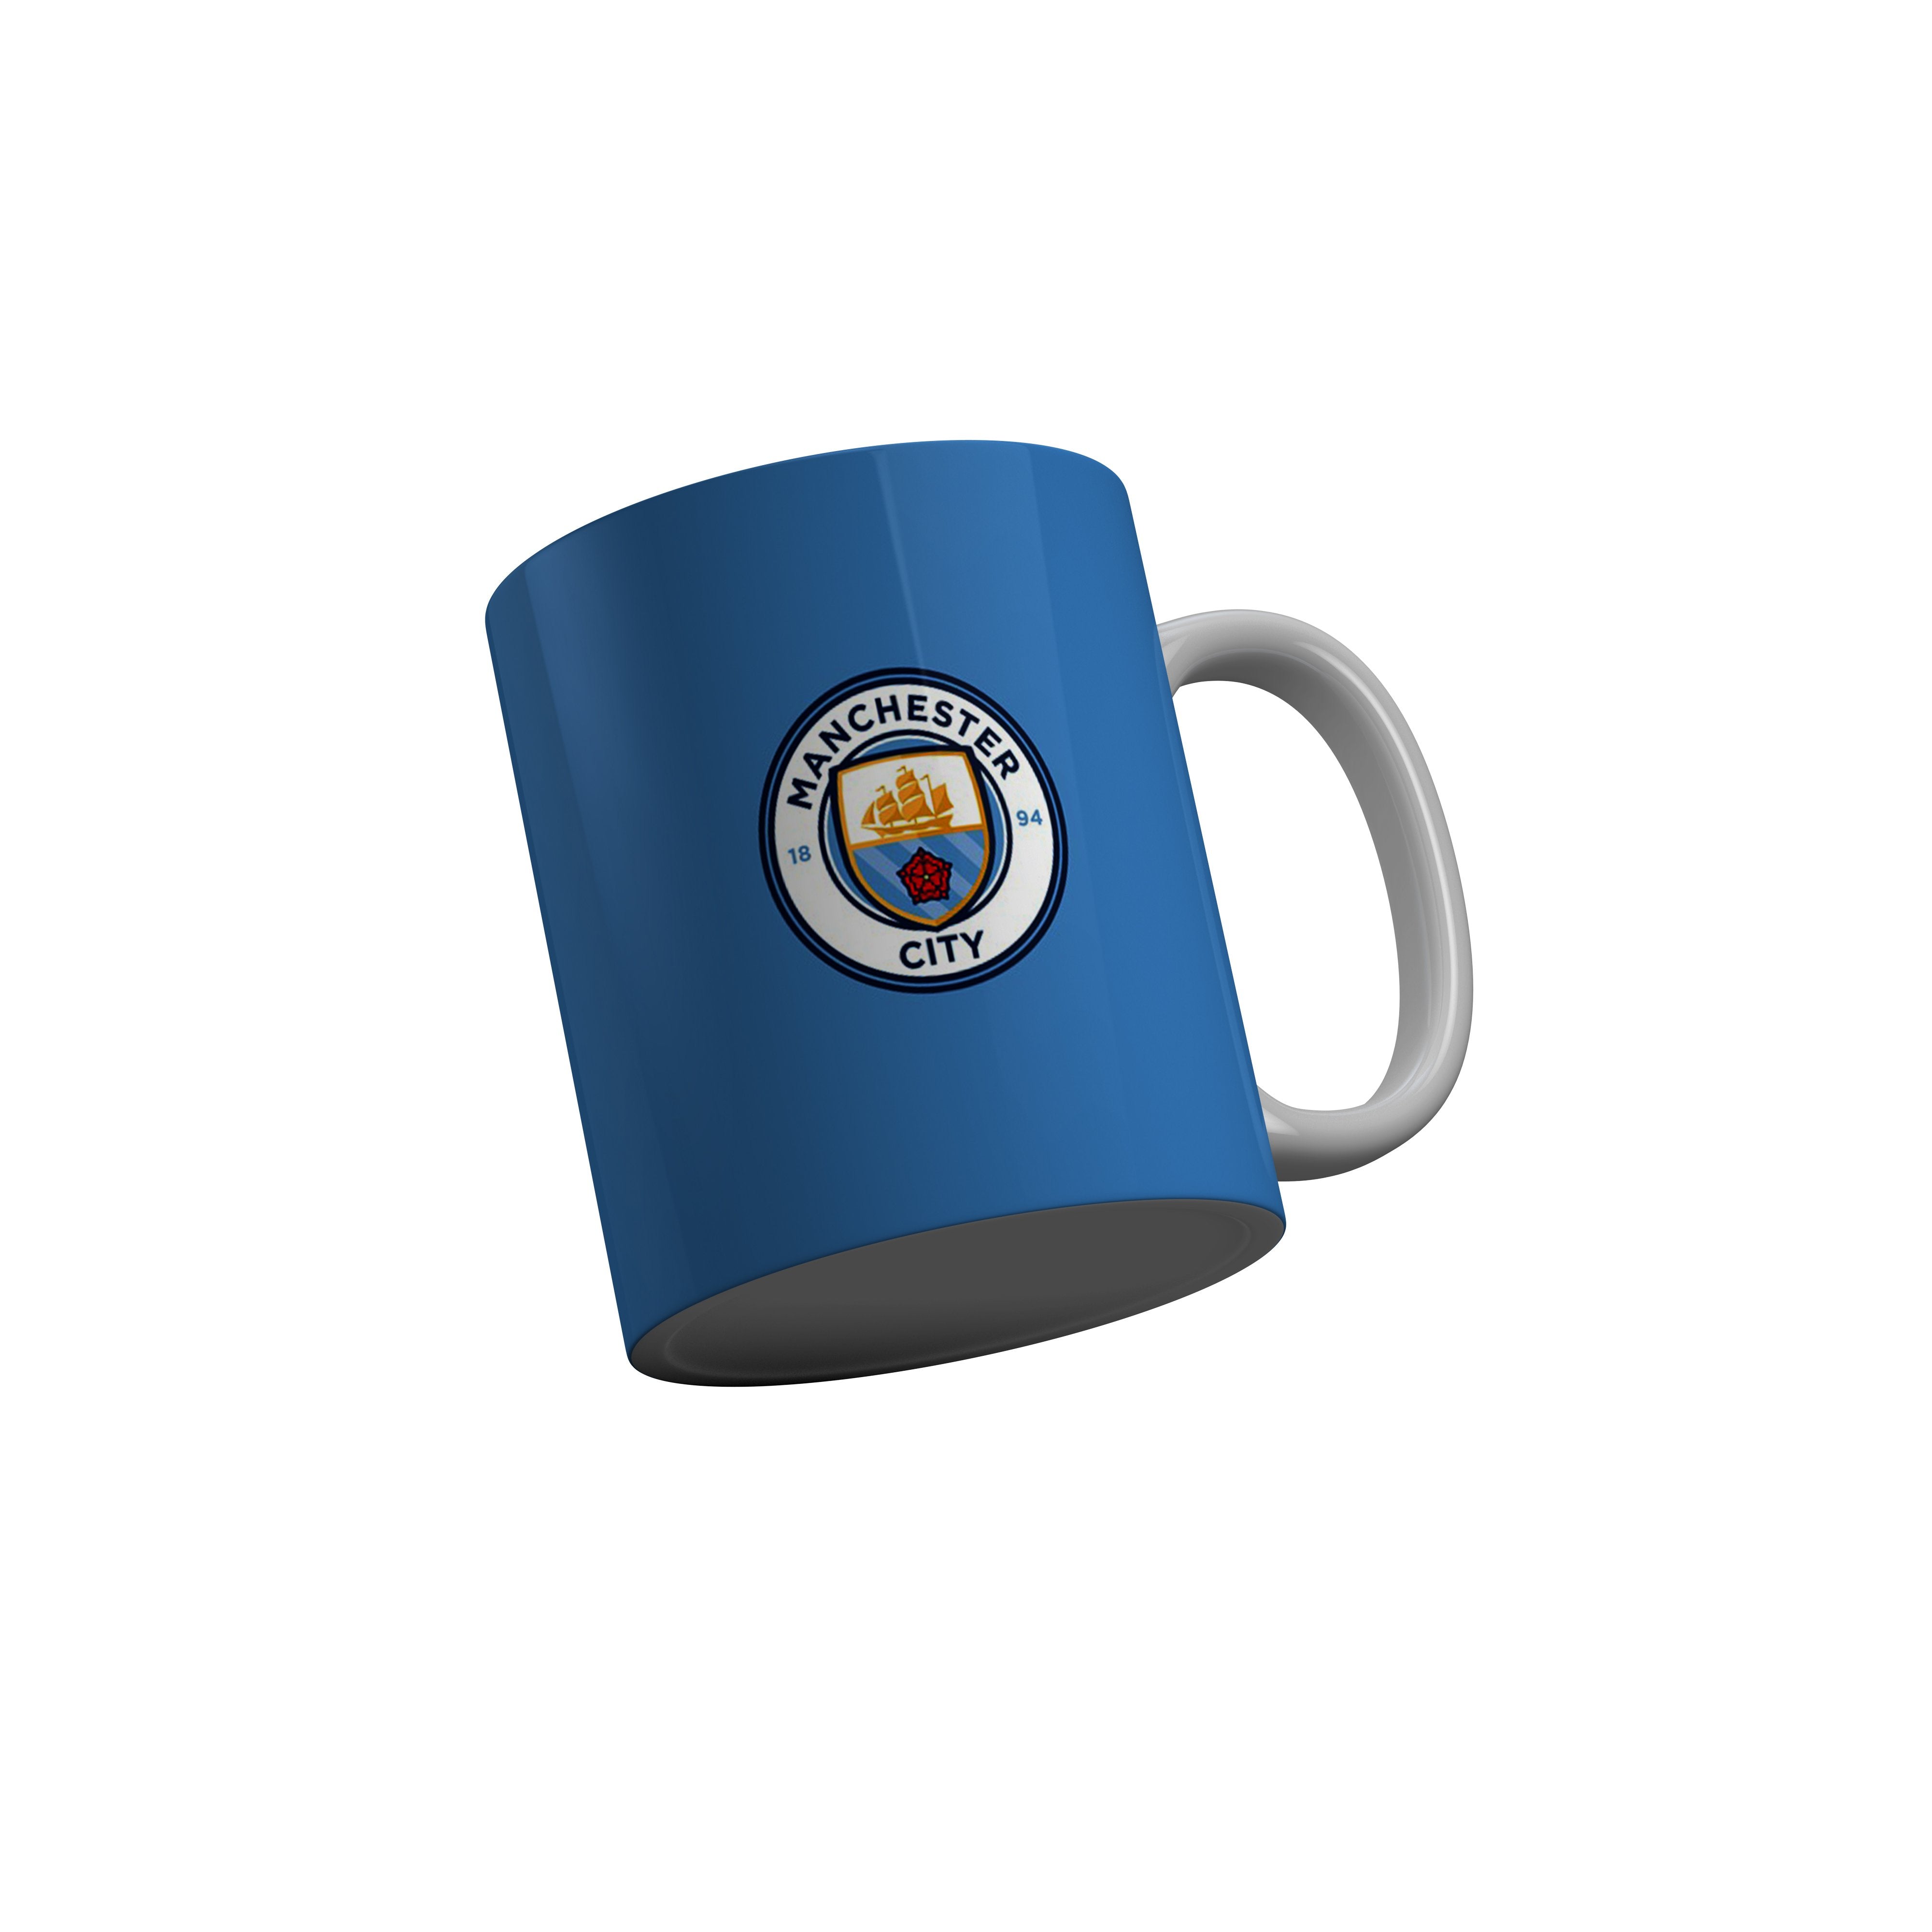 FashionRazor Manchester City Football Blue Ceramic Coffee Mug